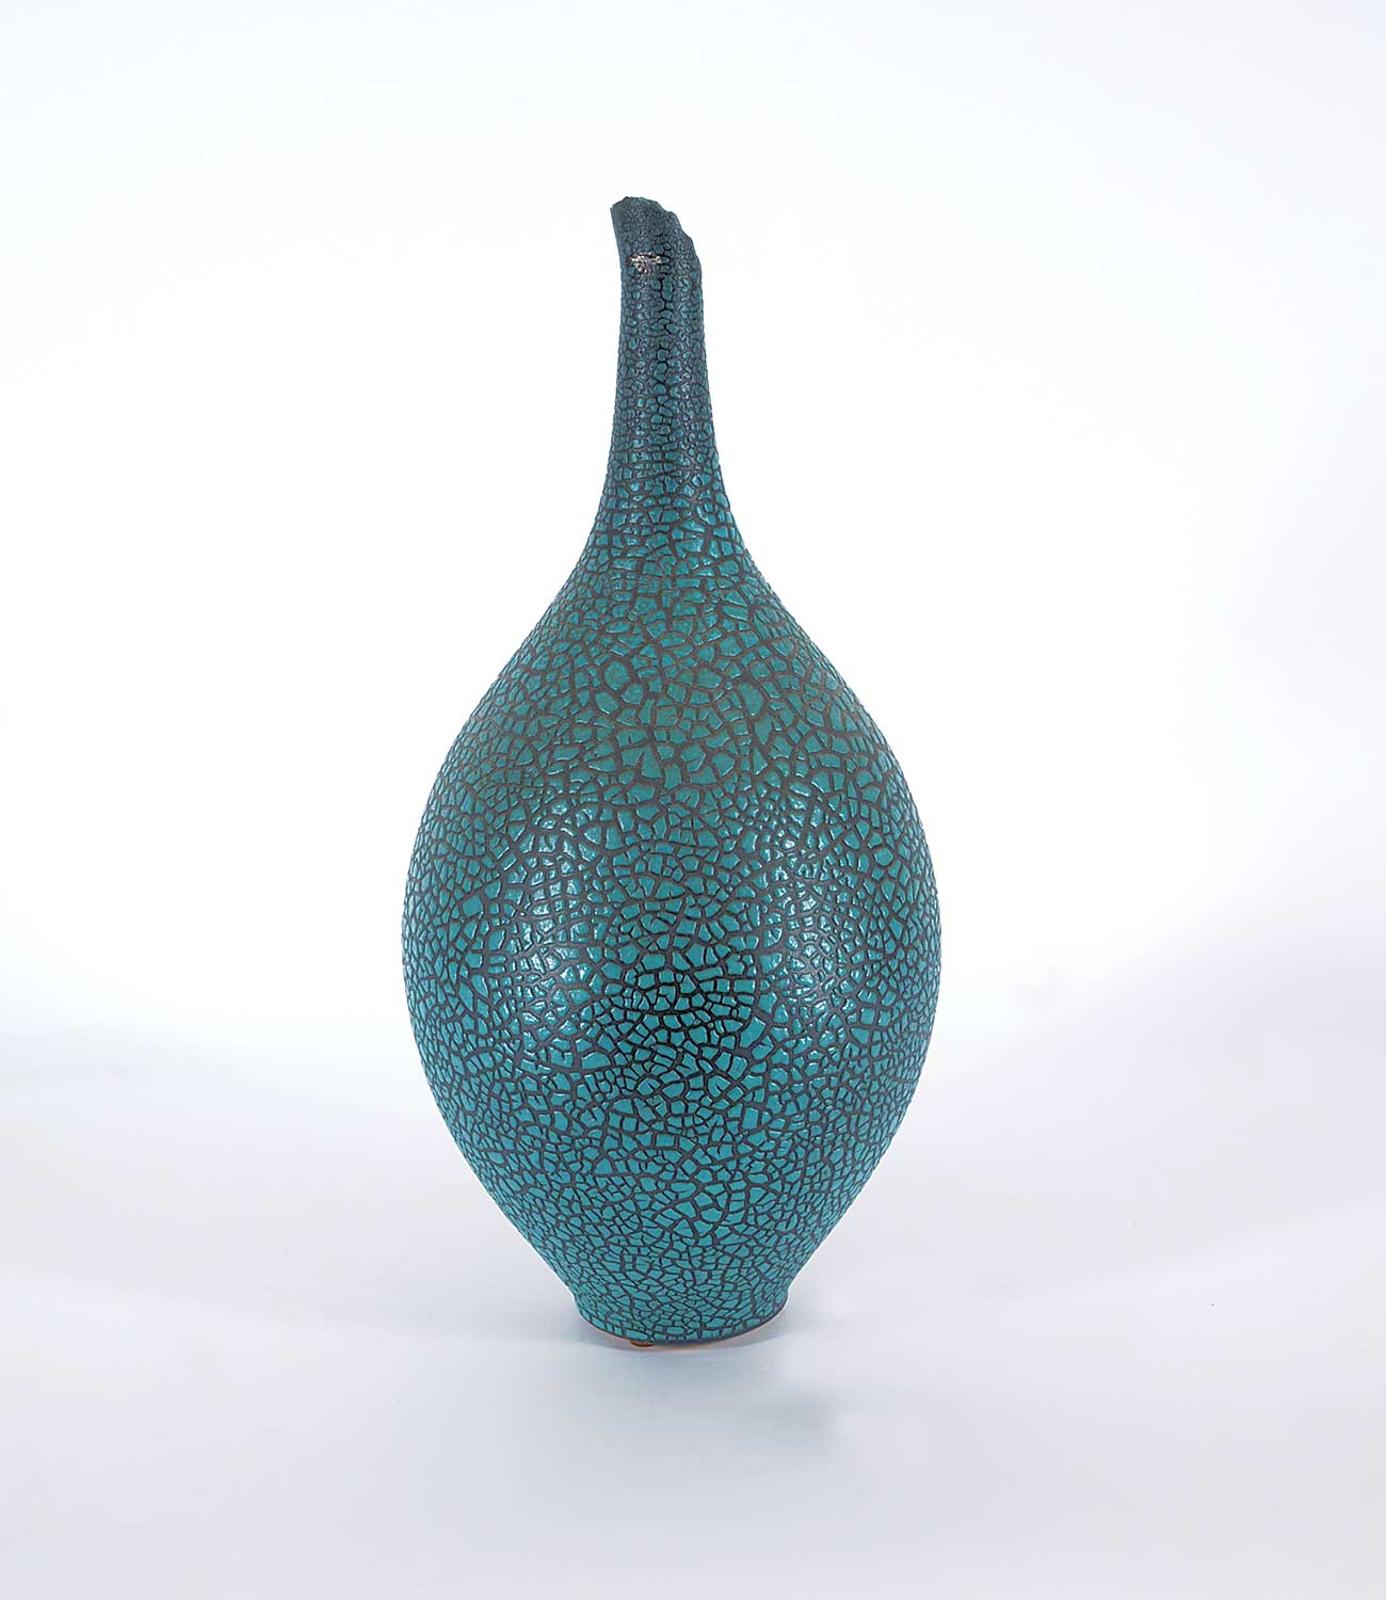 Mary Fox - Untitled - Turquoise Alligator Skin Vase